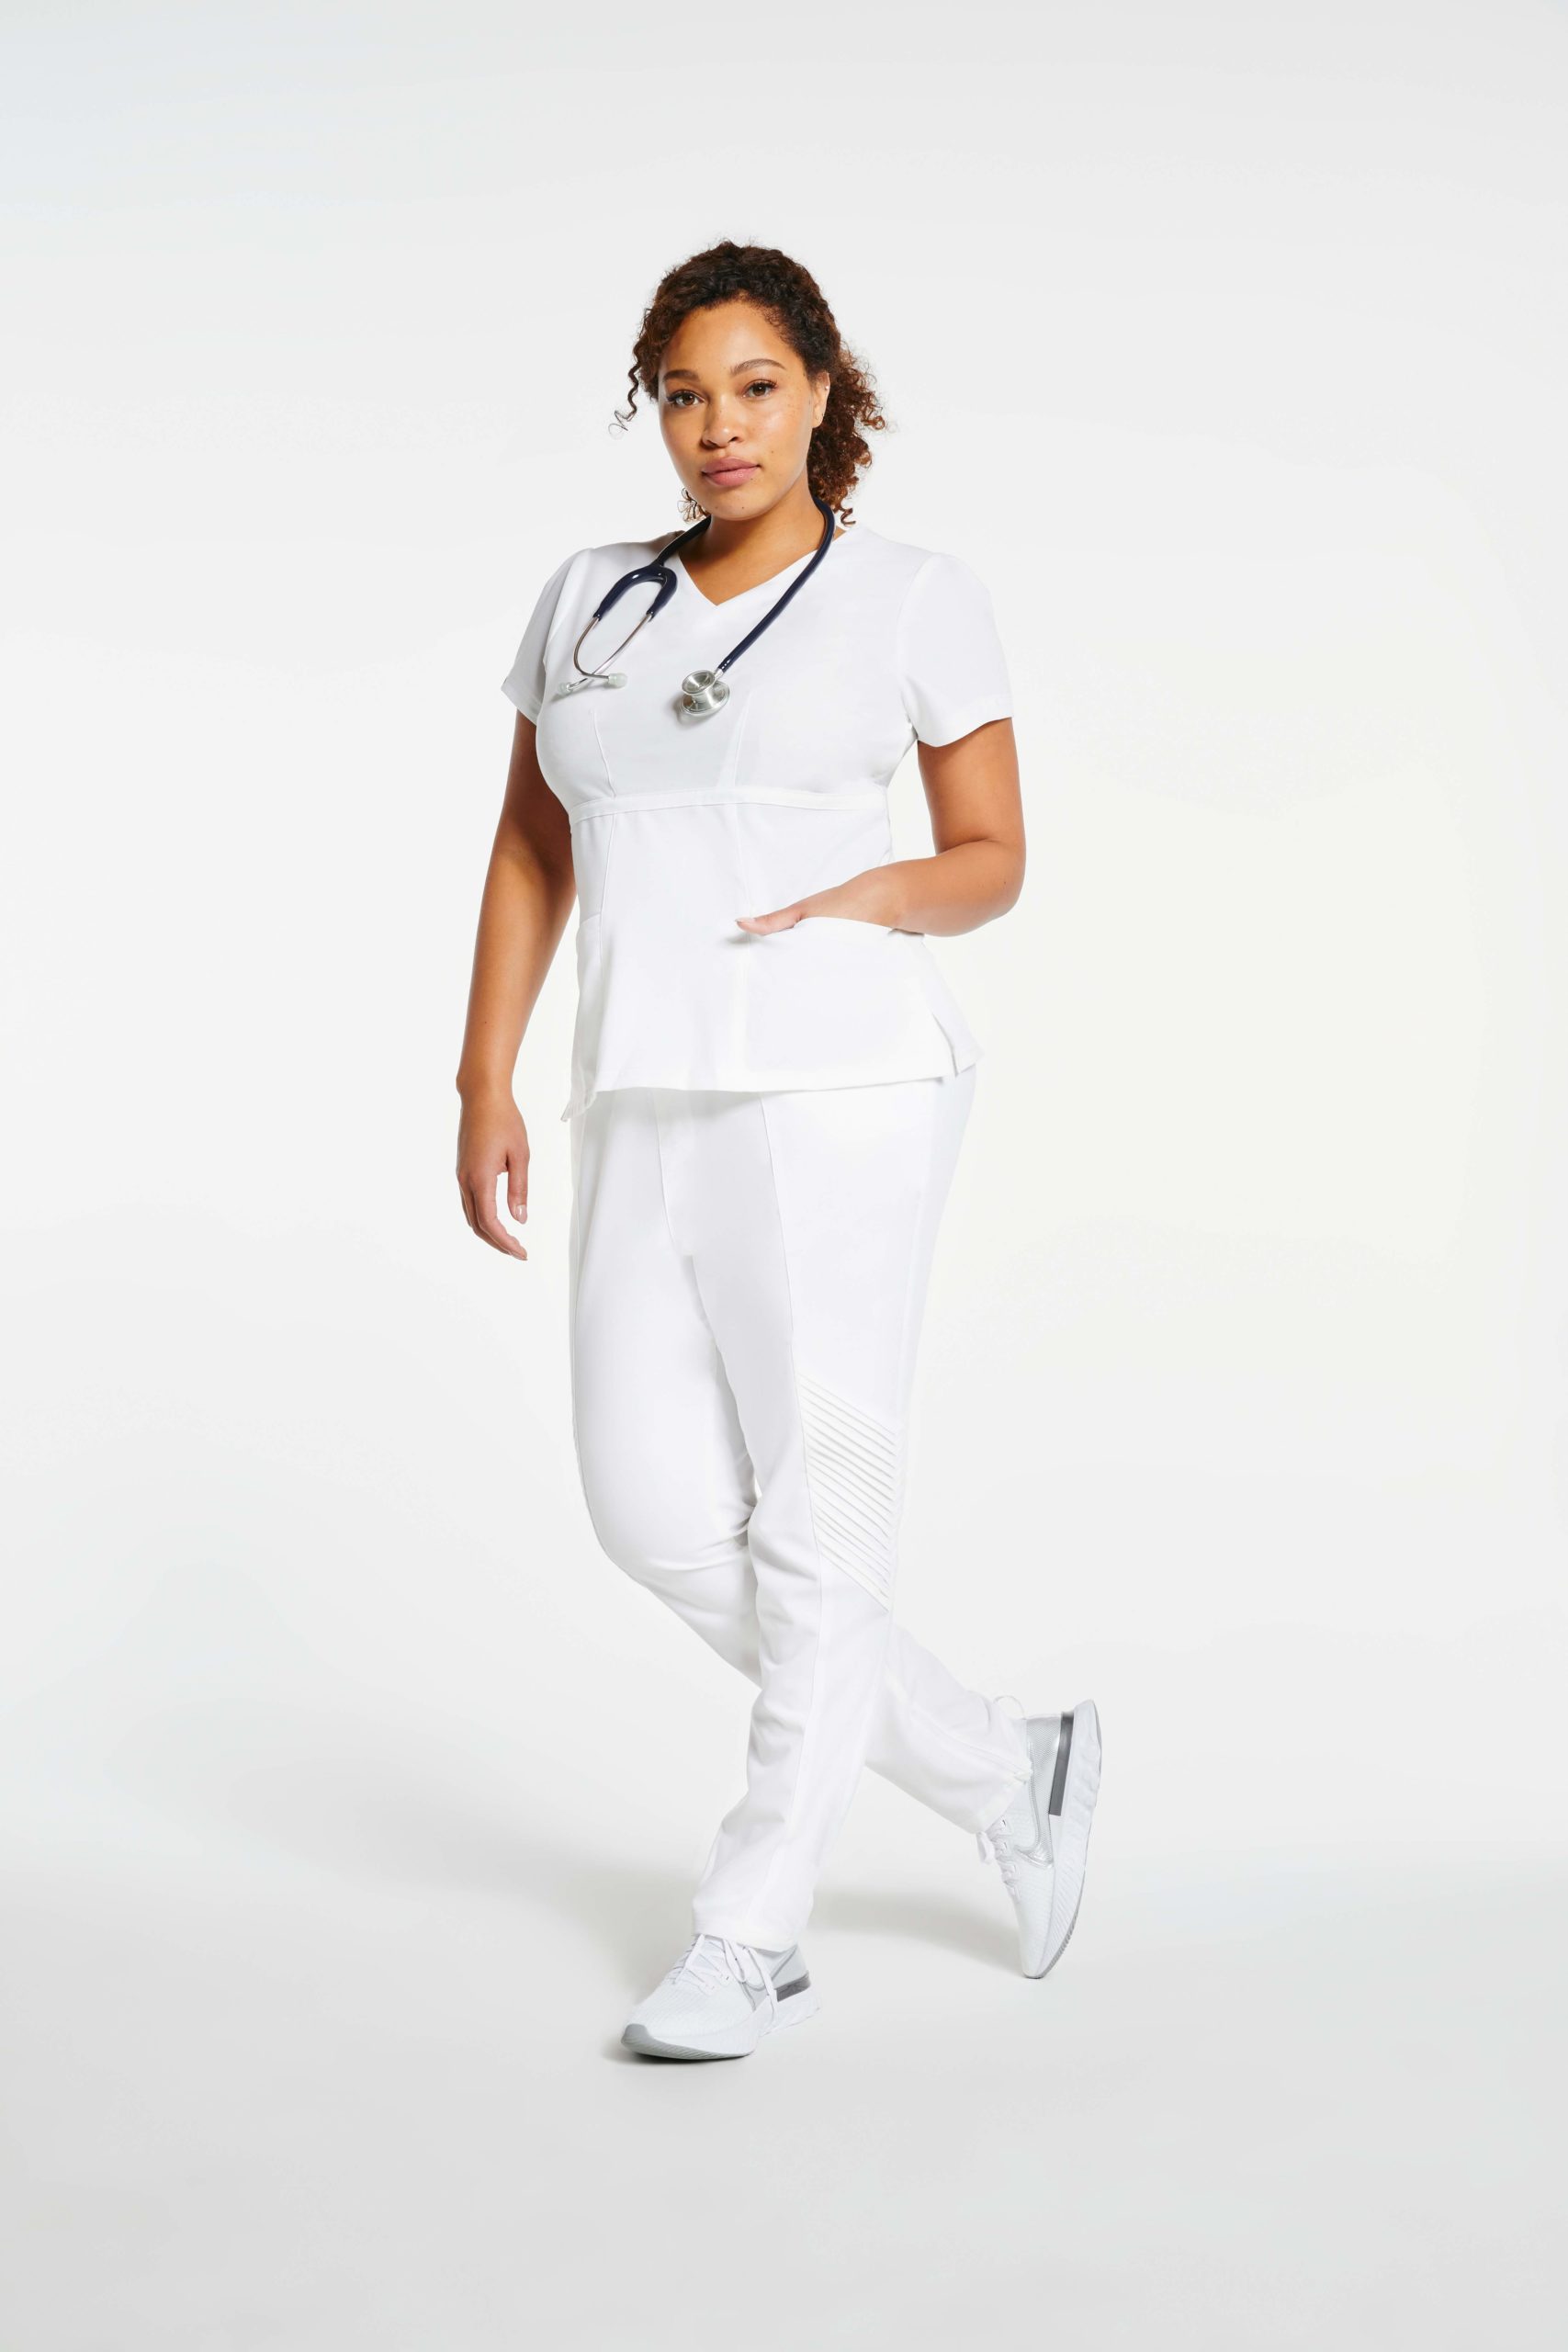 nurse wearing white moto pants